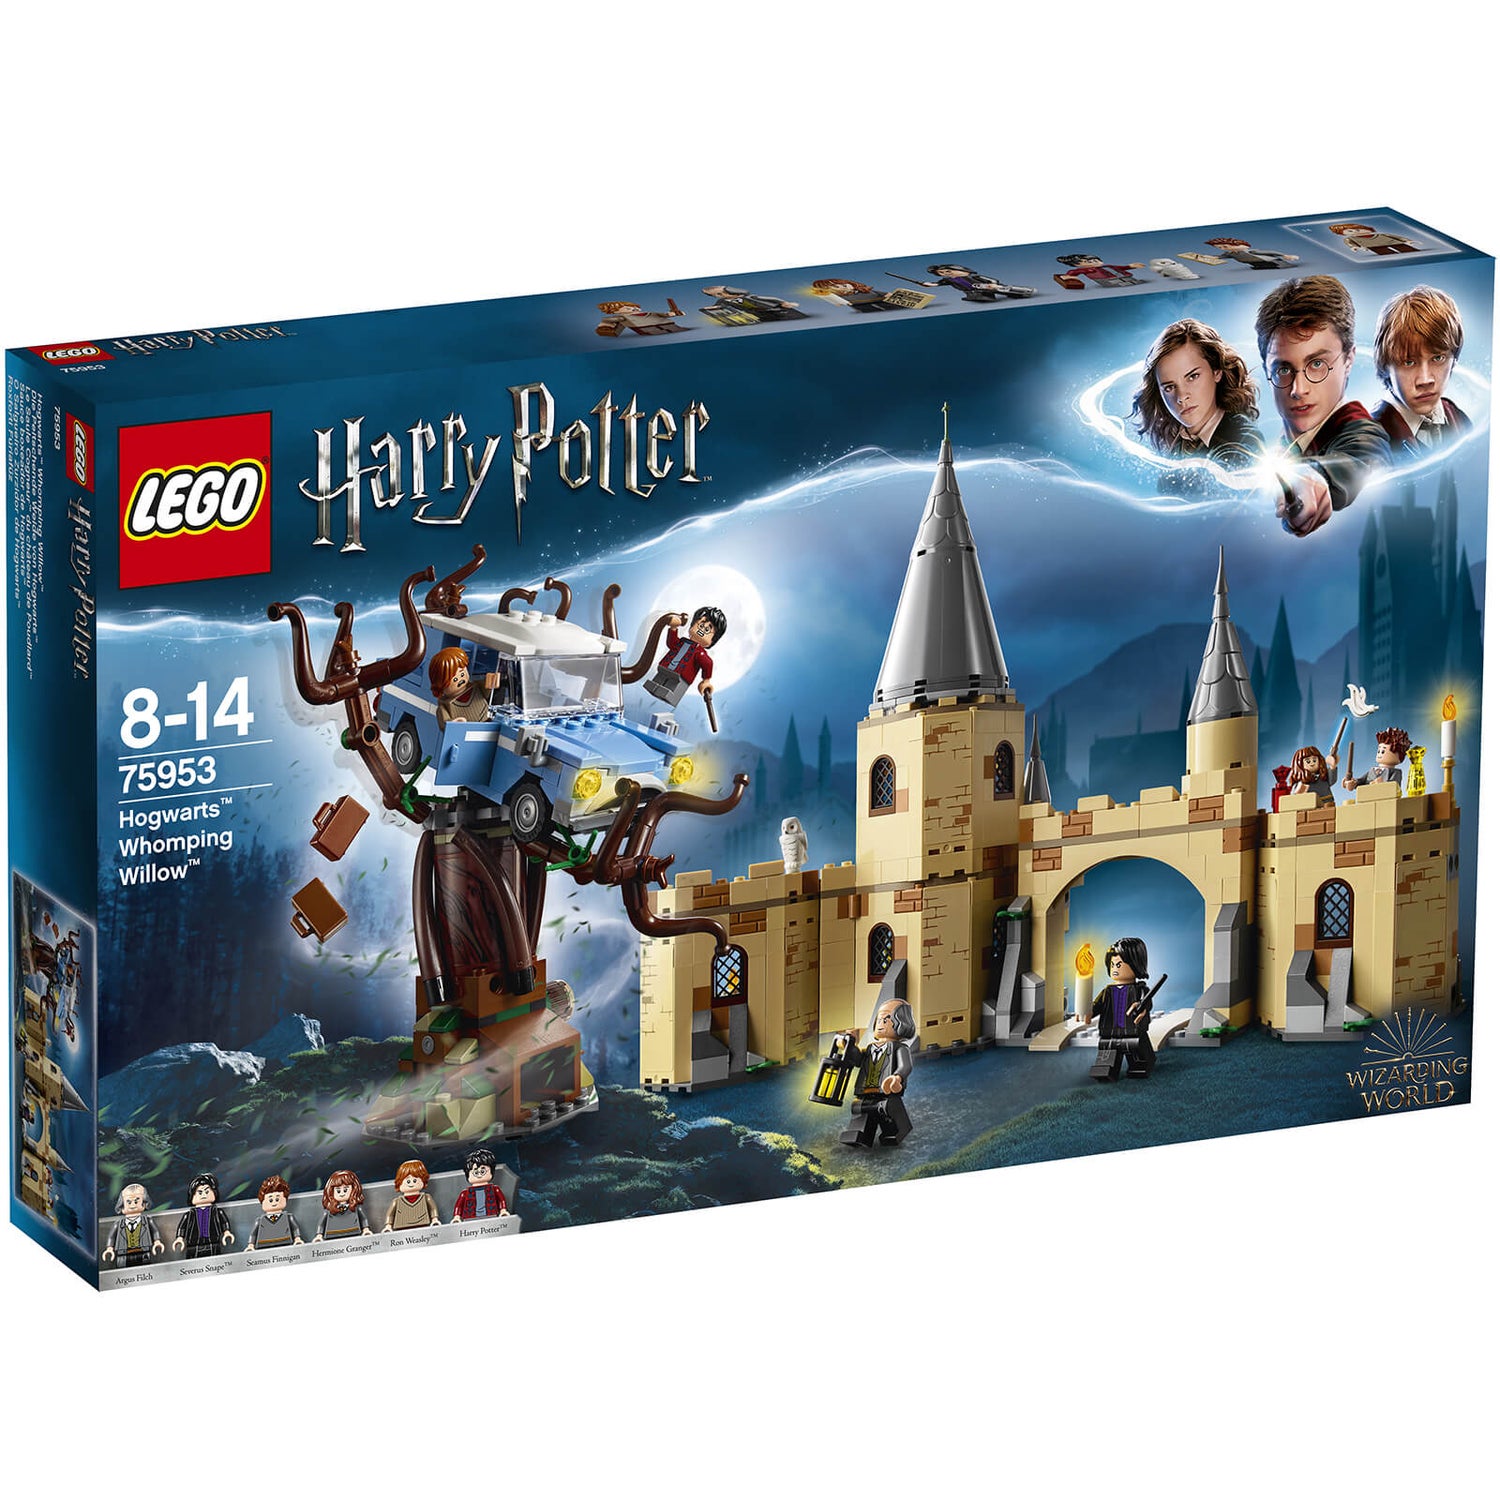 Le château de Poudlard 71043 | Harry Potter™ | Boutique LEGO® officielle CA